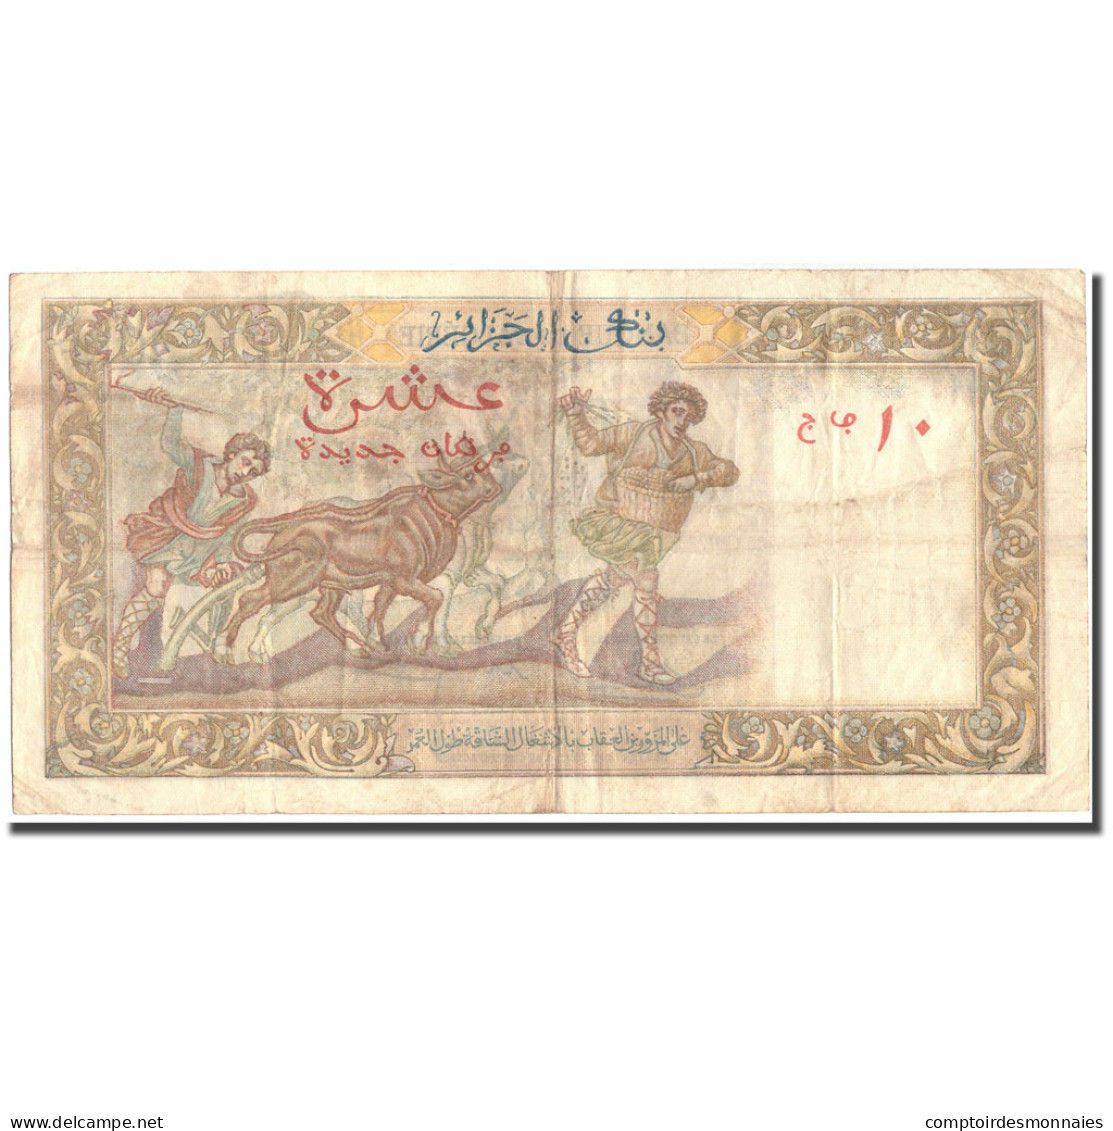 Billet, Algeria, 10 Nouveaux Francs, 1961, 1961-02-10, KM:119a, TB+ - Algerien